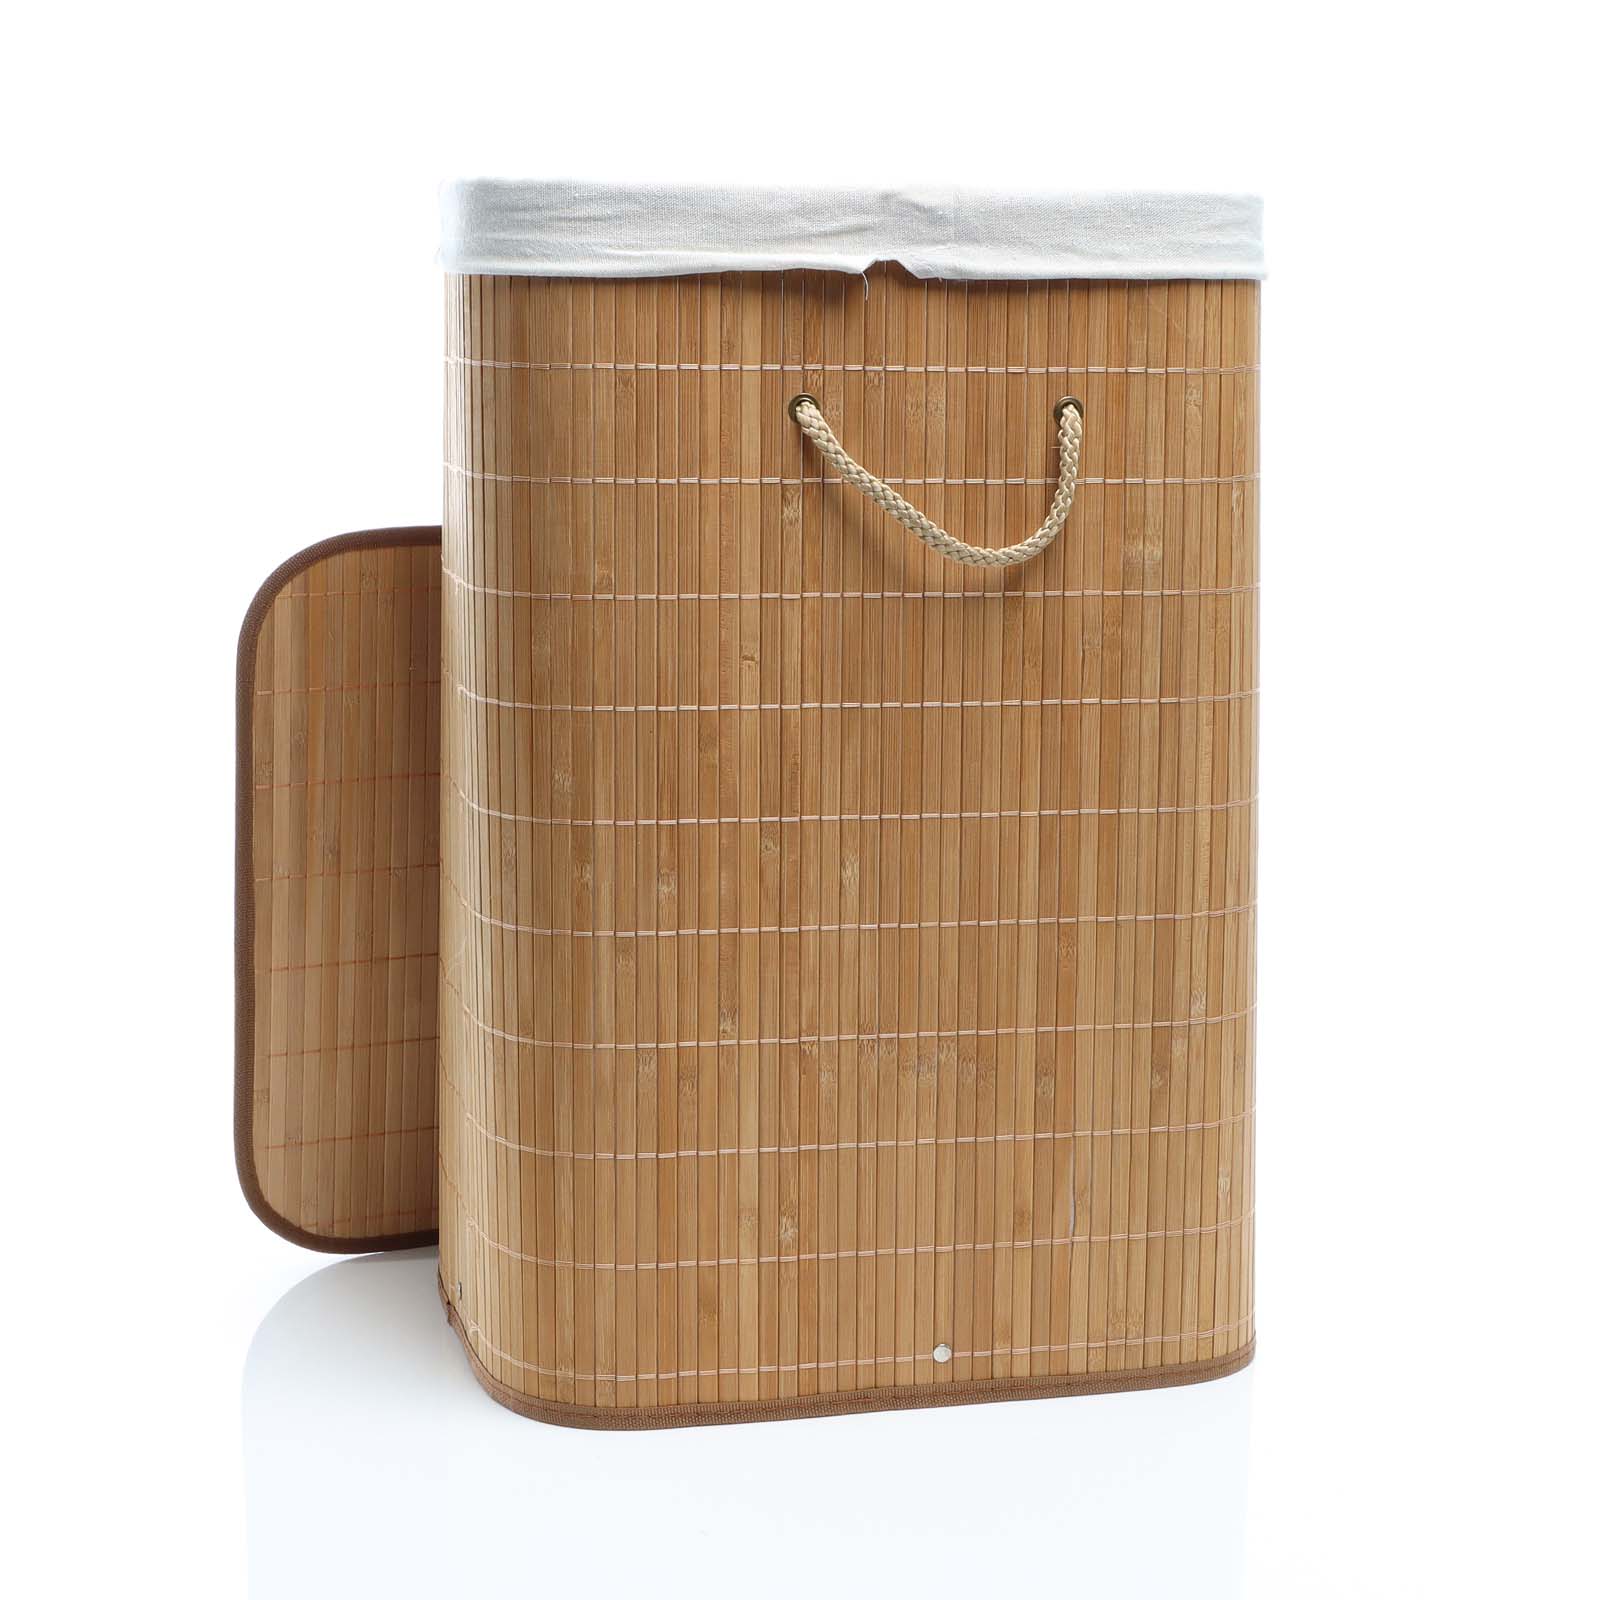 Cestos almacenamiento de bambú en set de 4 comprar AQUÍ